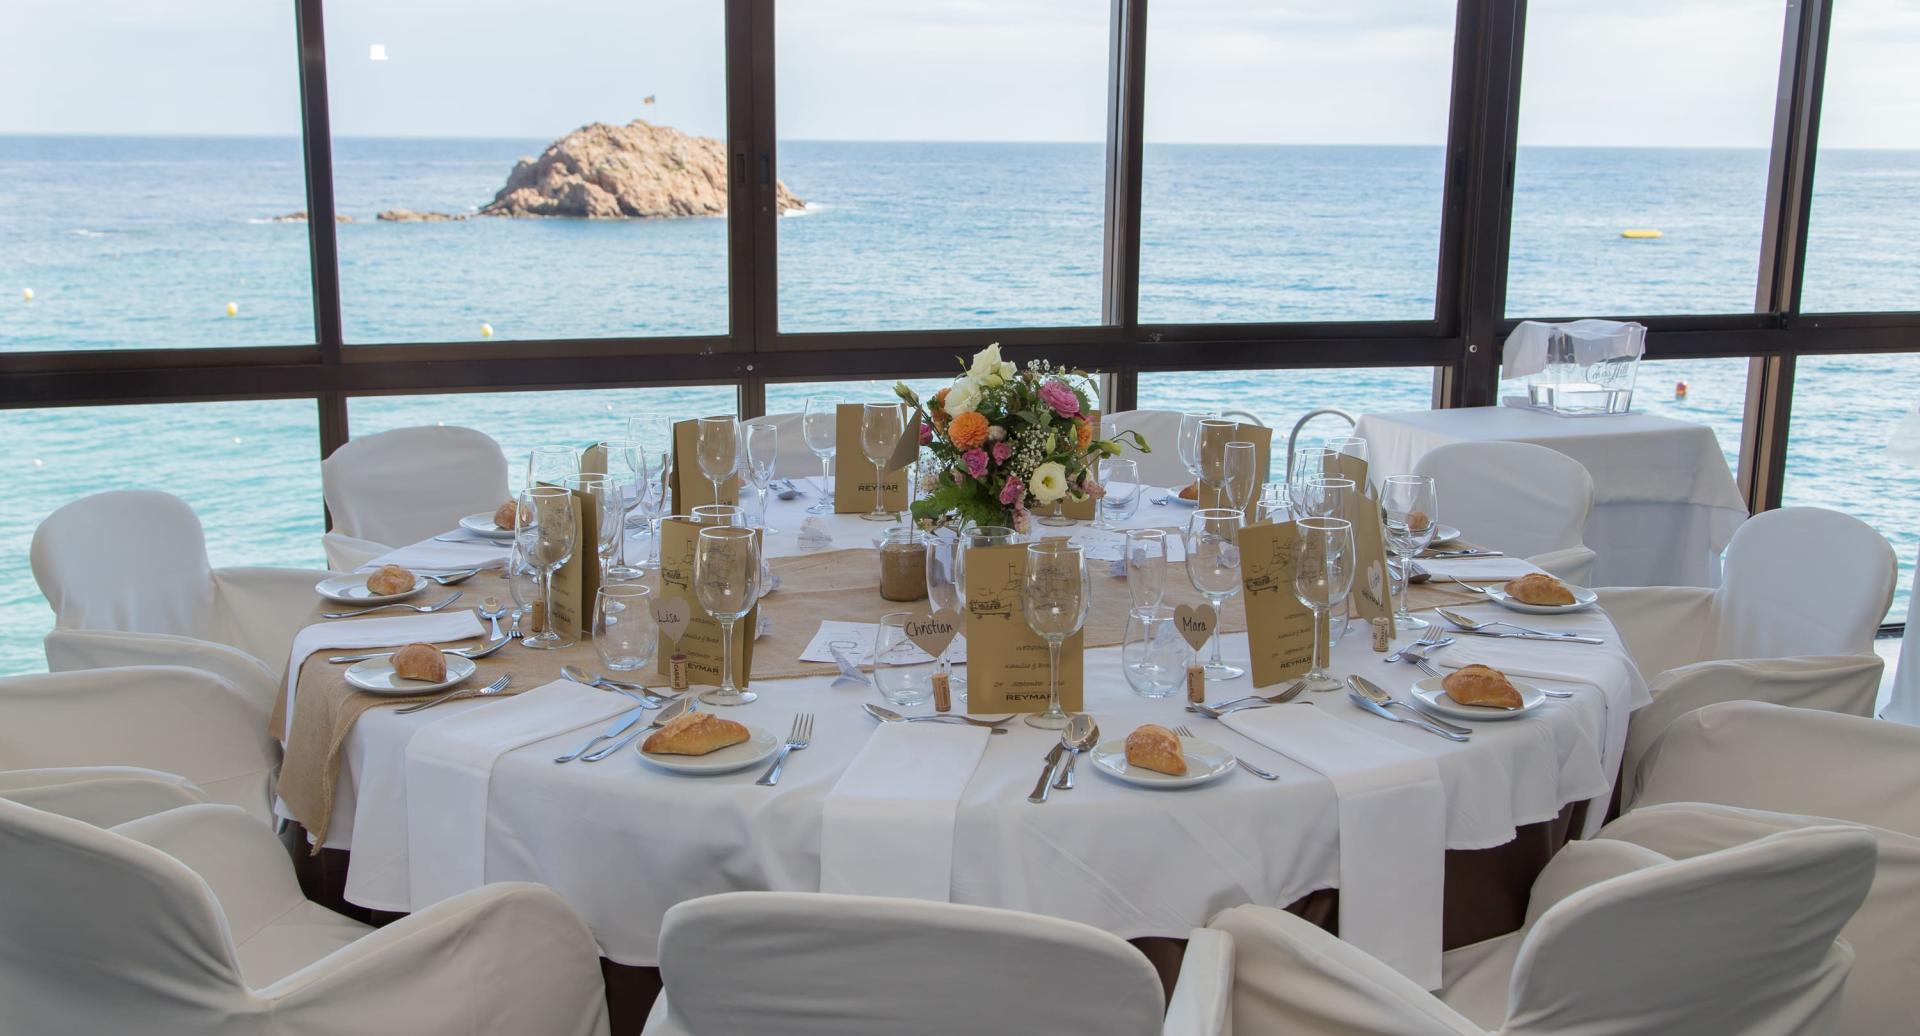 Celebra el teu esdeveniment amb vistes al mar